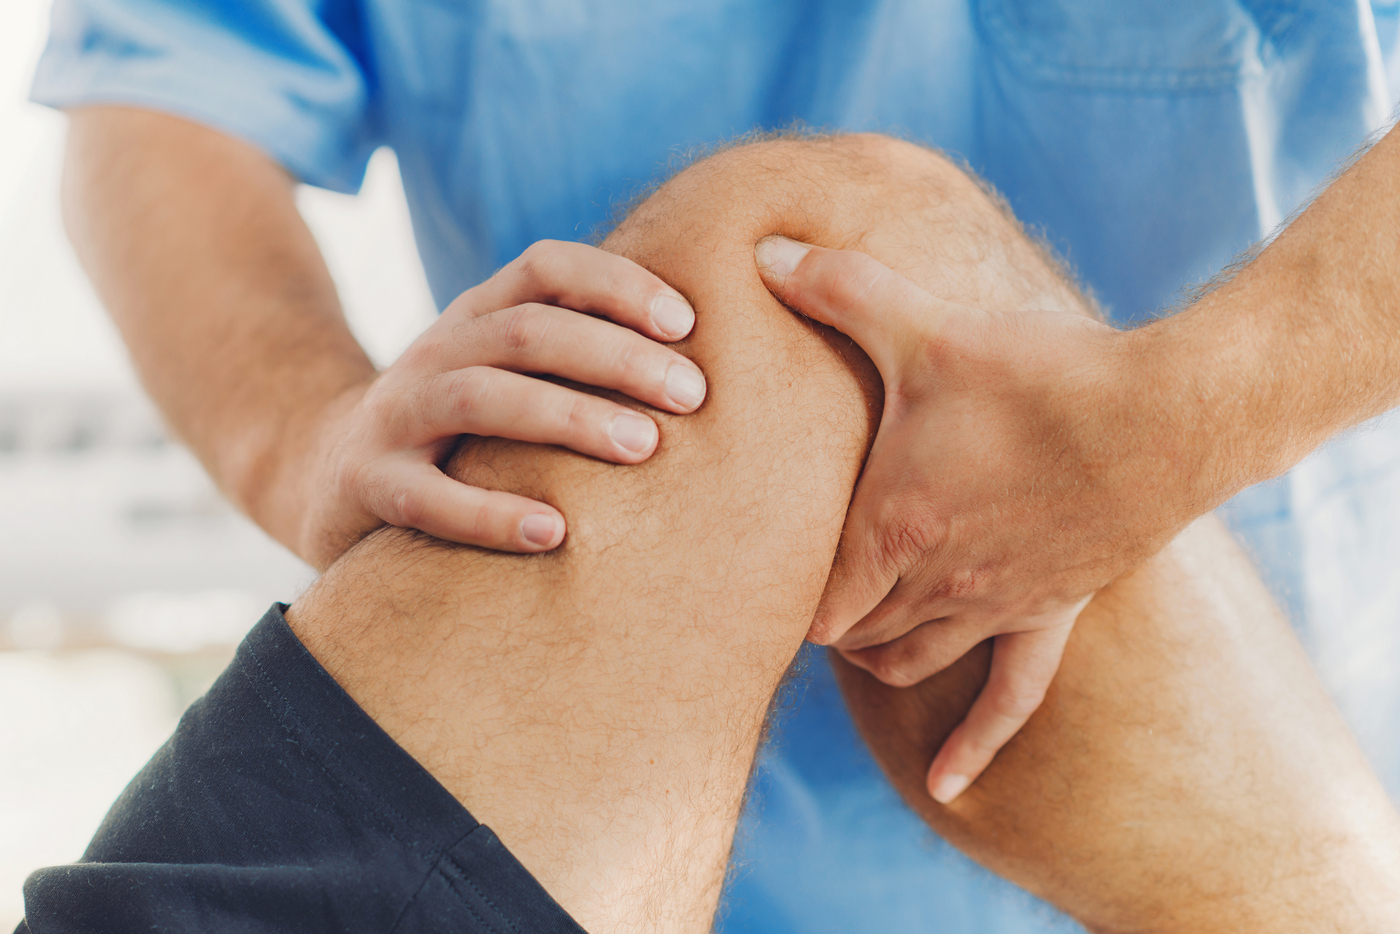 durere severă la picior sub genunchi articulații care îmbunătățesc circulația sângelui